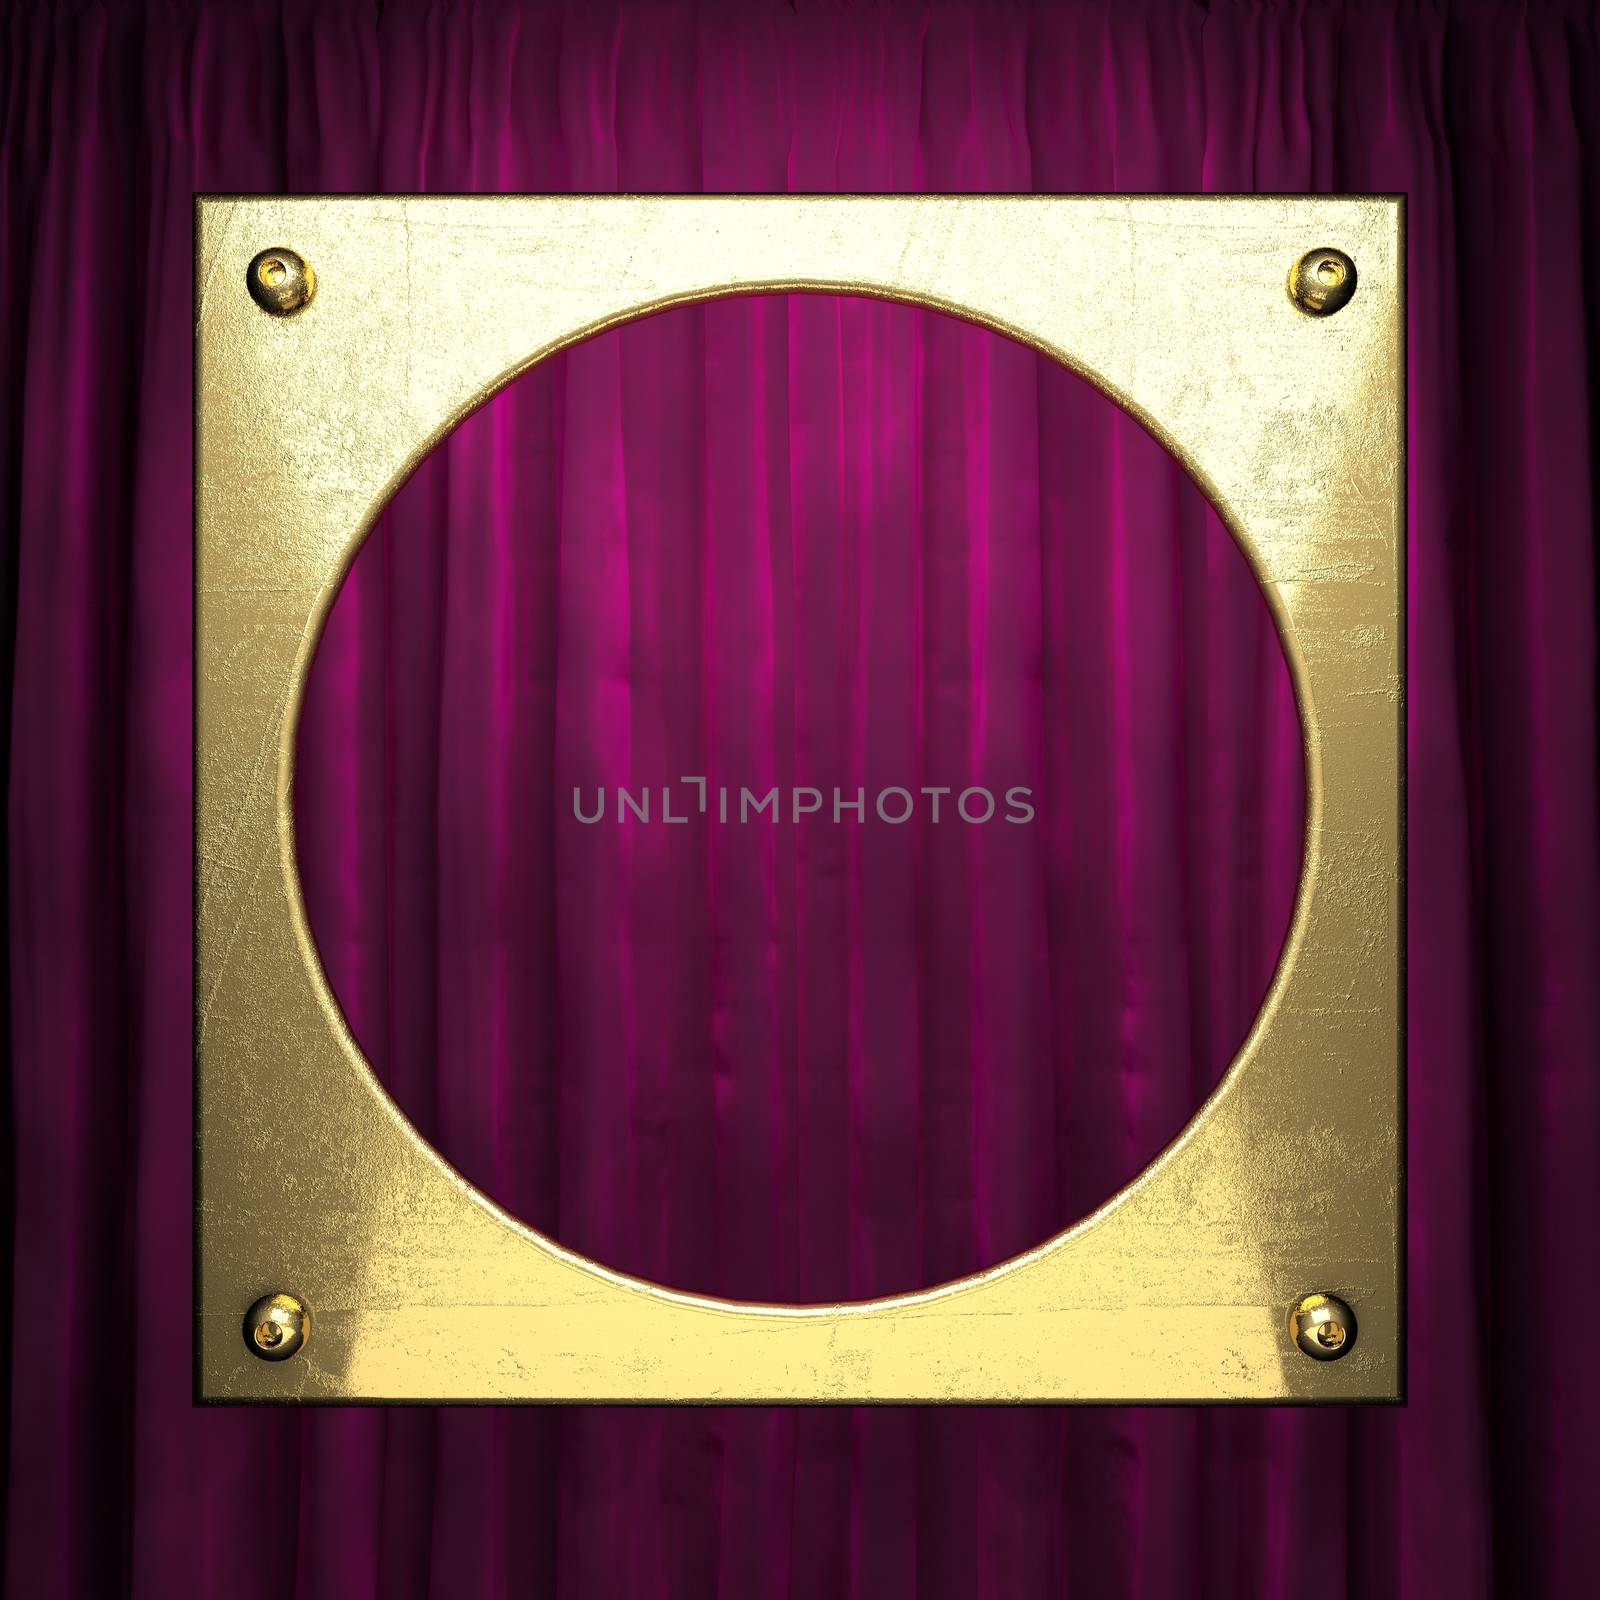 gold on red velvet curtain background